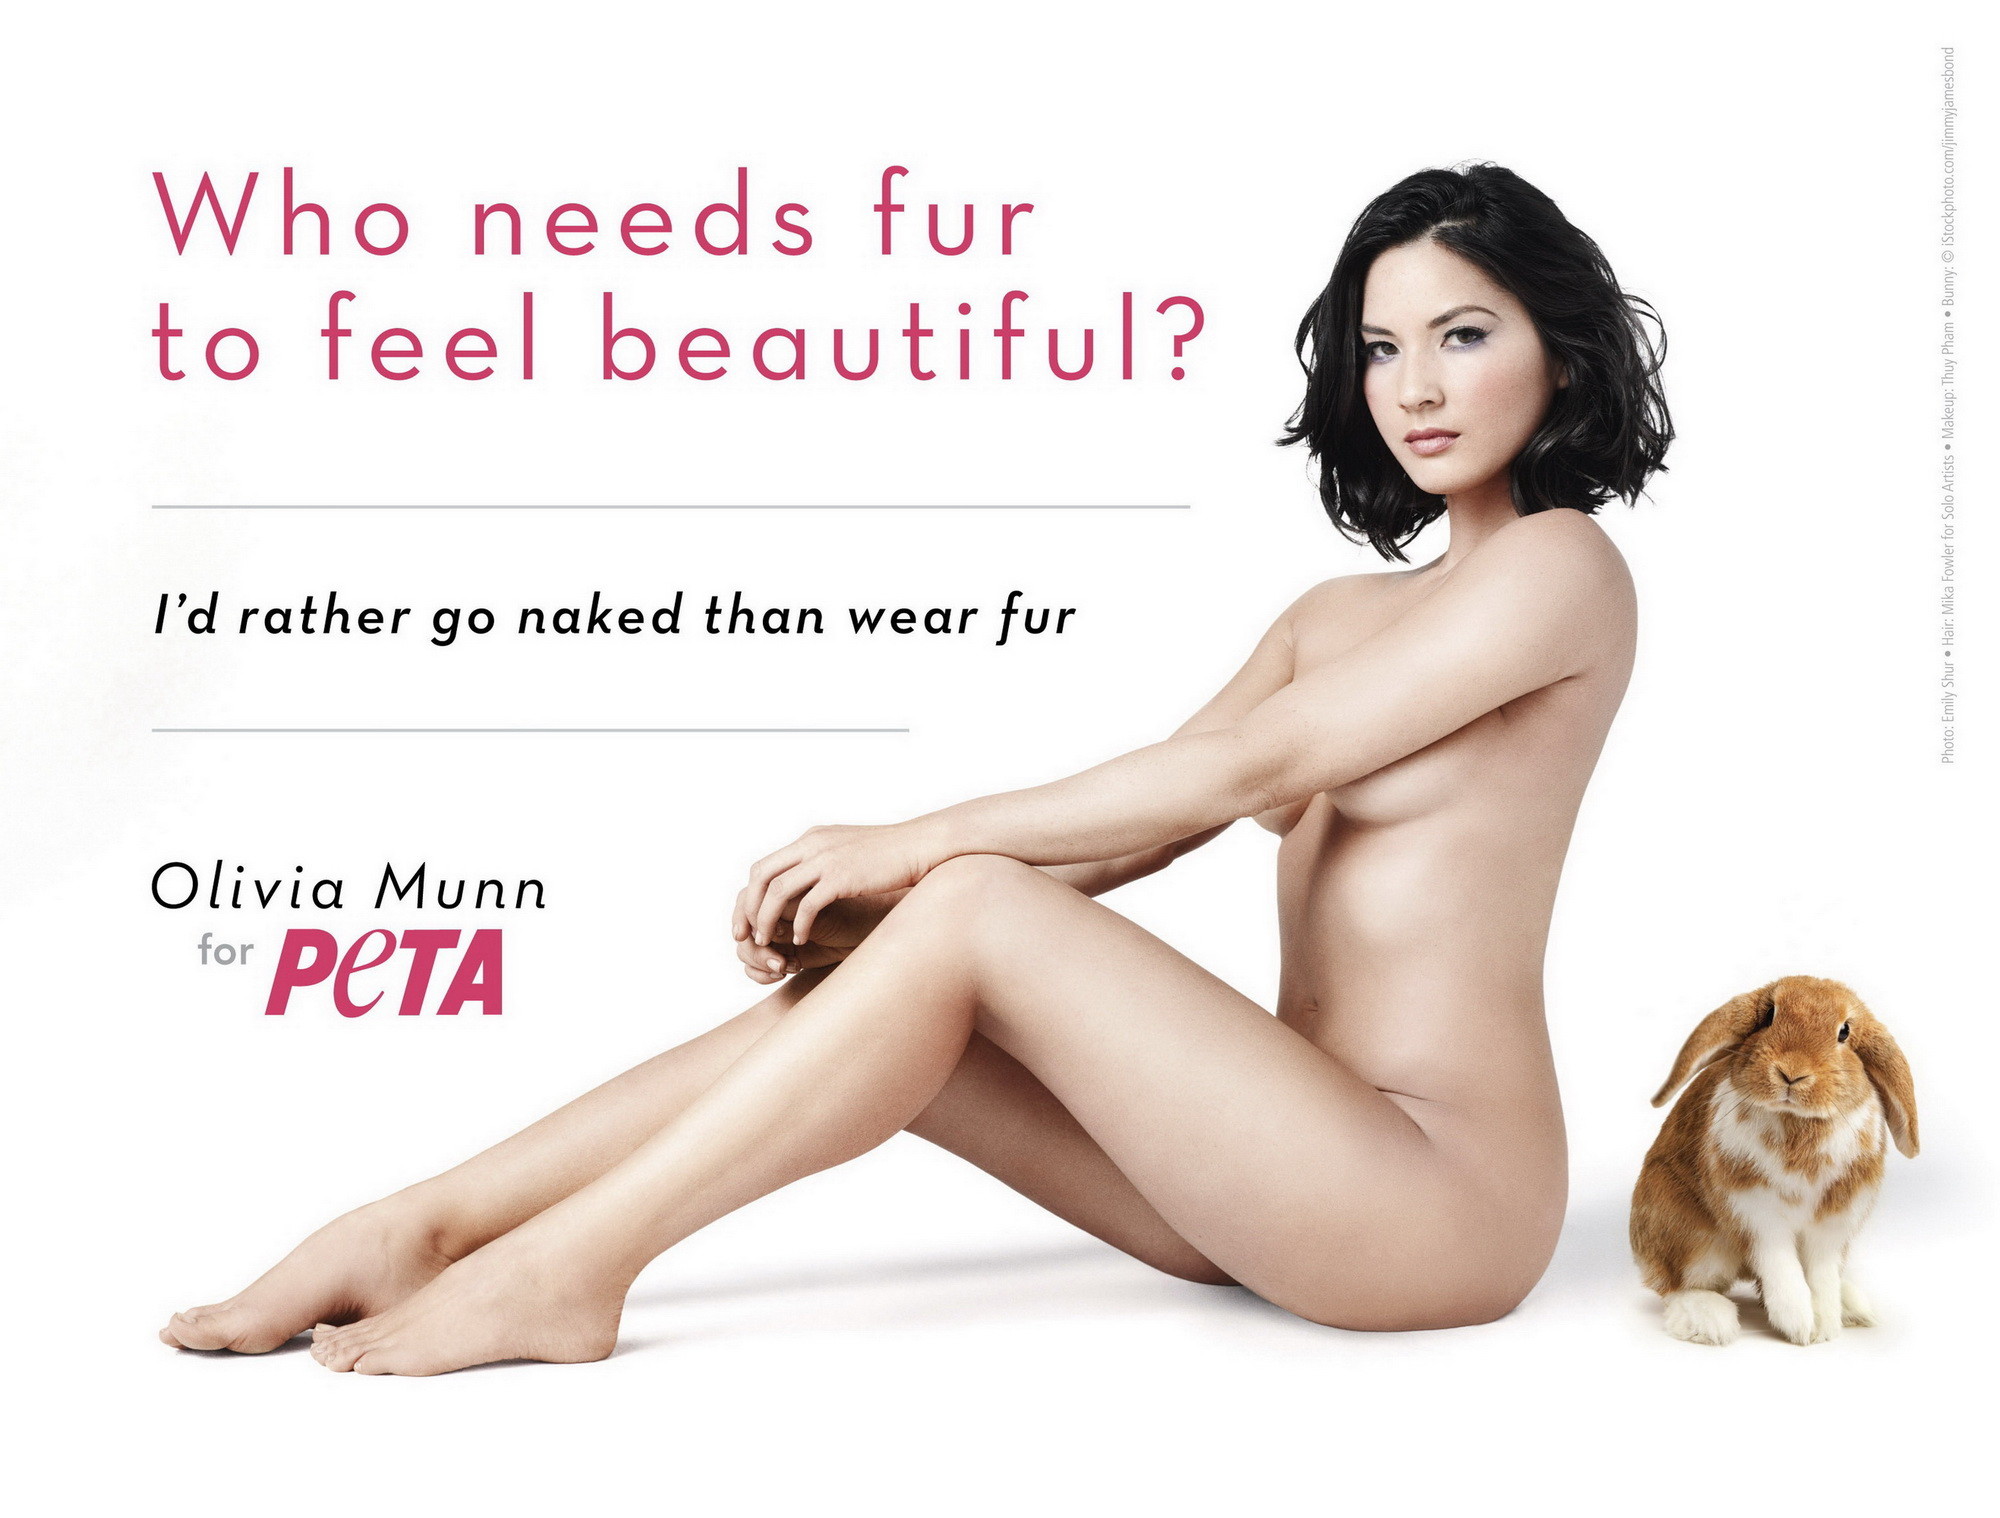 Olivia Munn völlig nackt, aber versteckt für die neue Peta-Kampagne
 #75276543